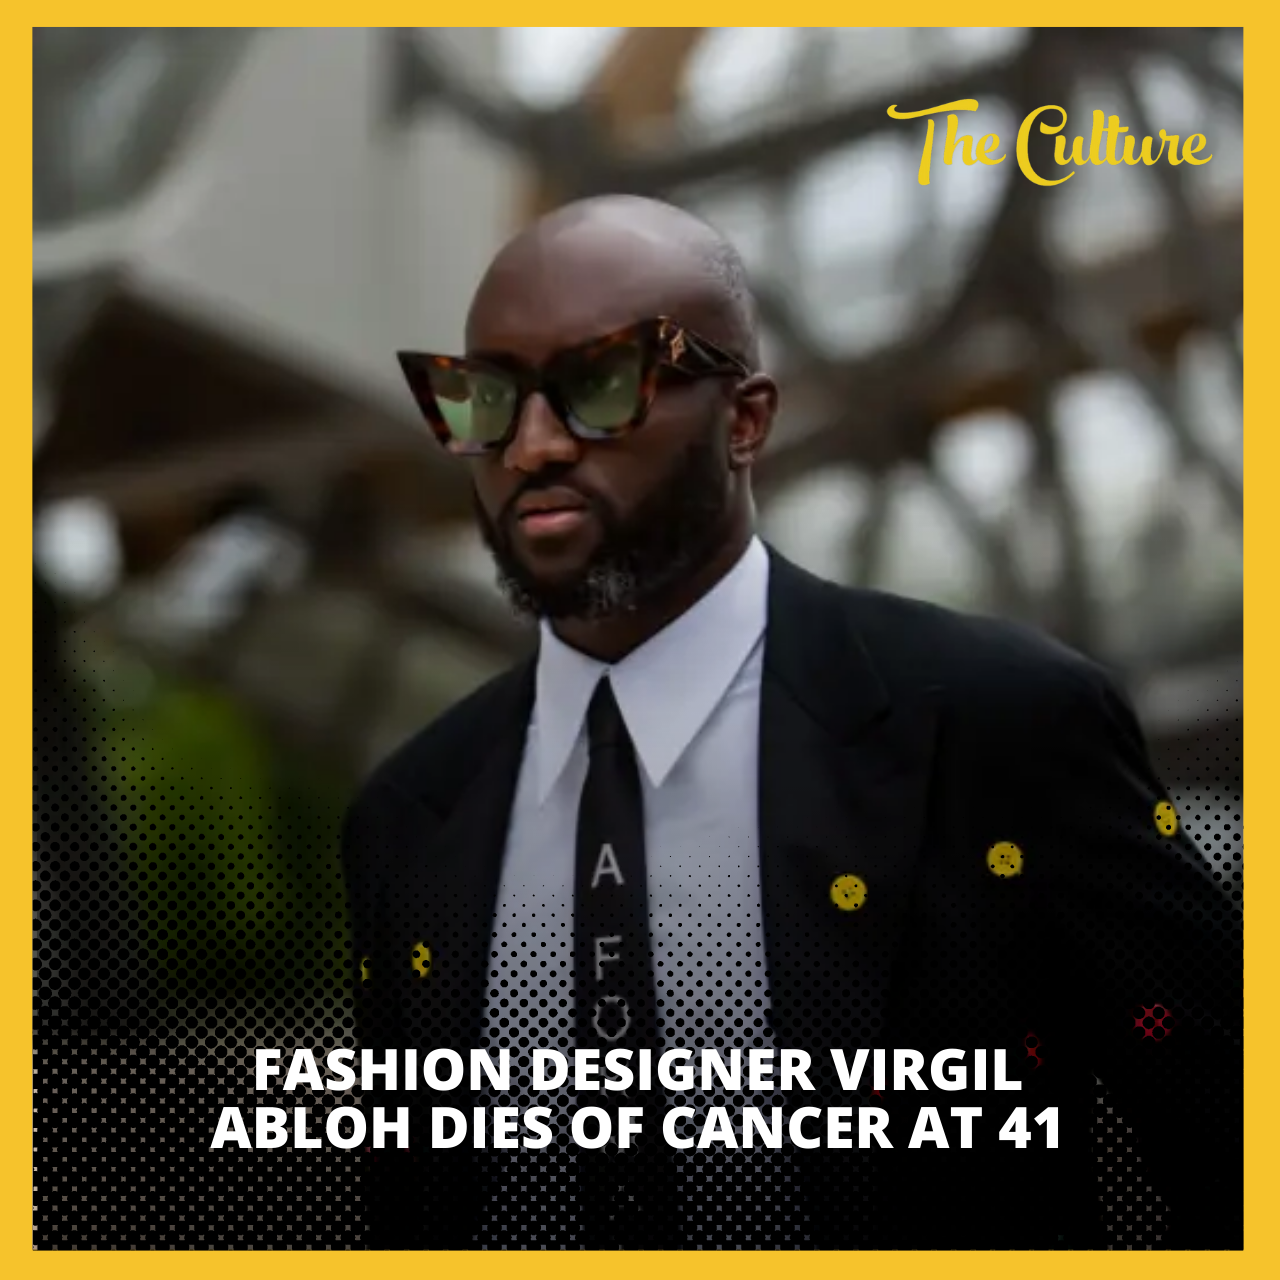 Fashion designer Virgil Abloh dies of cancer at 41